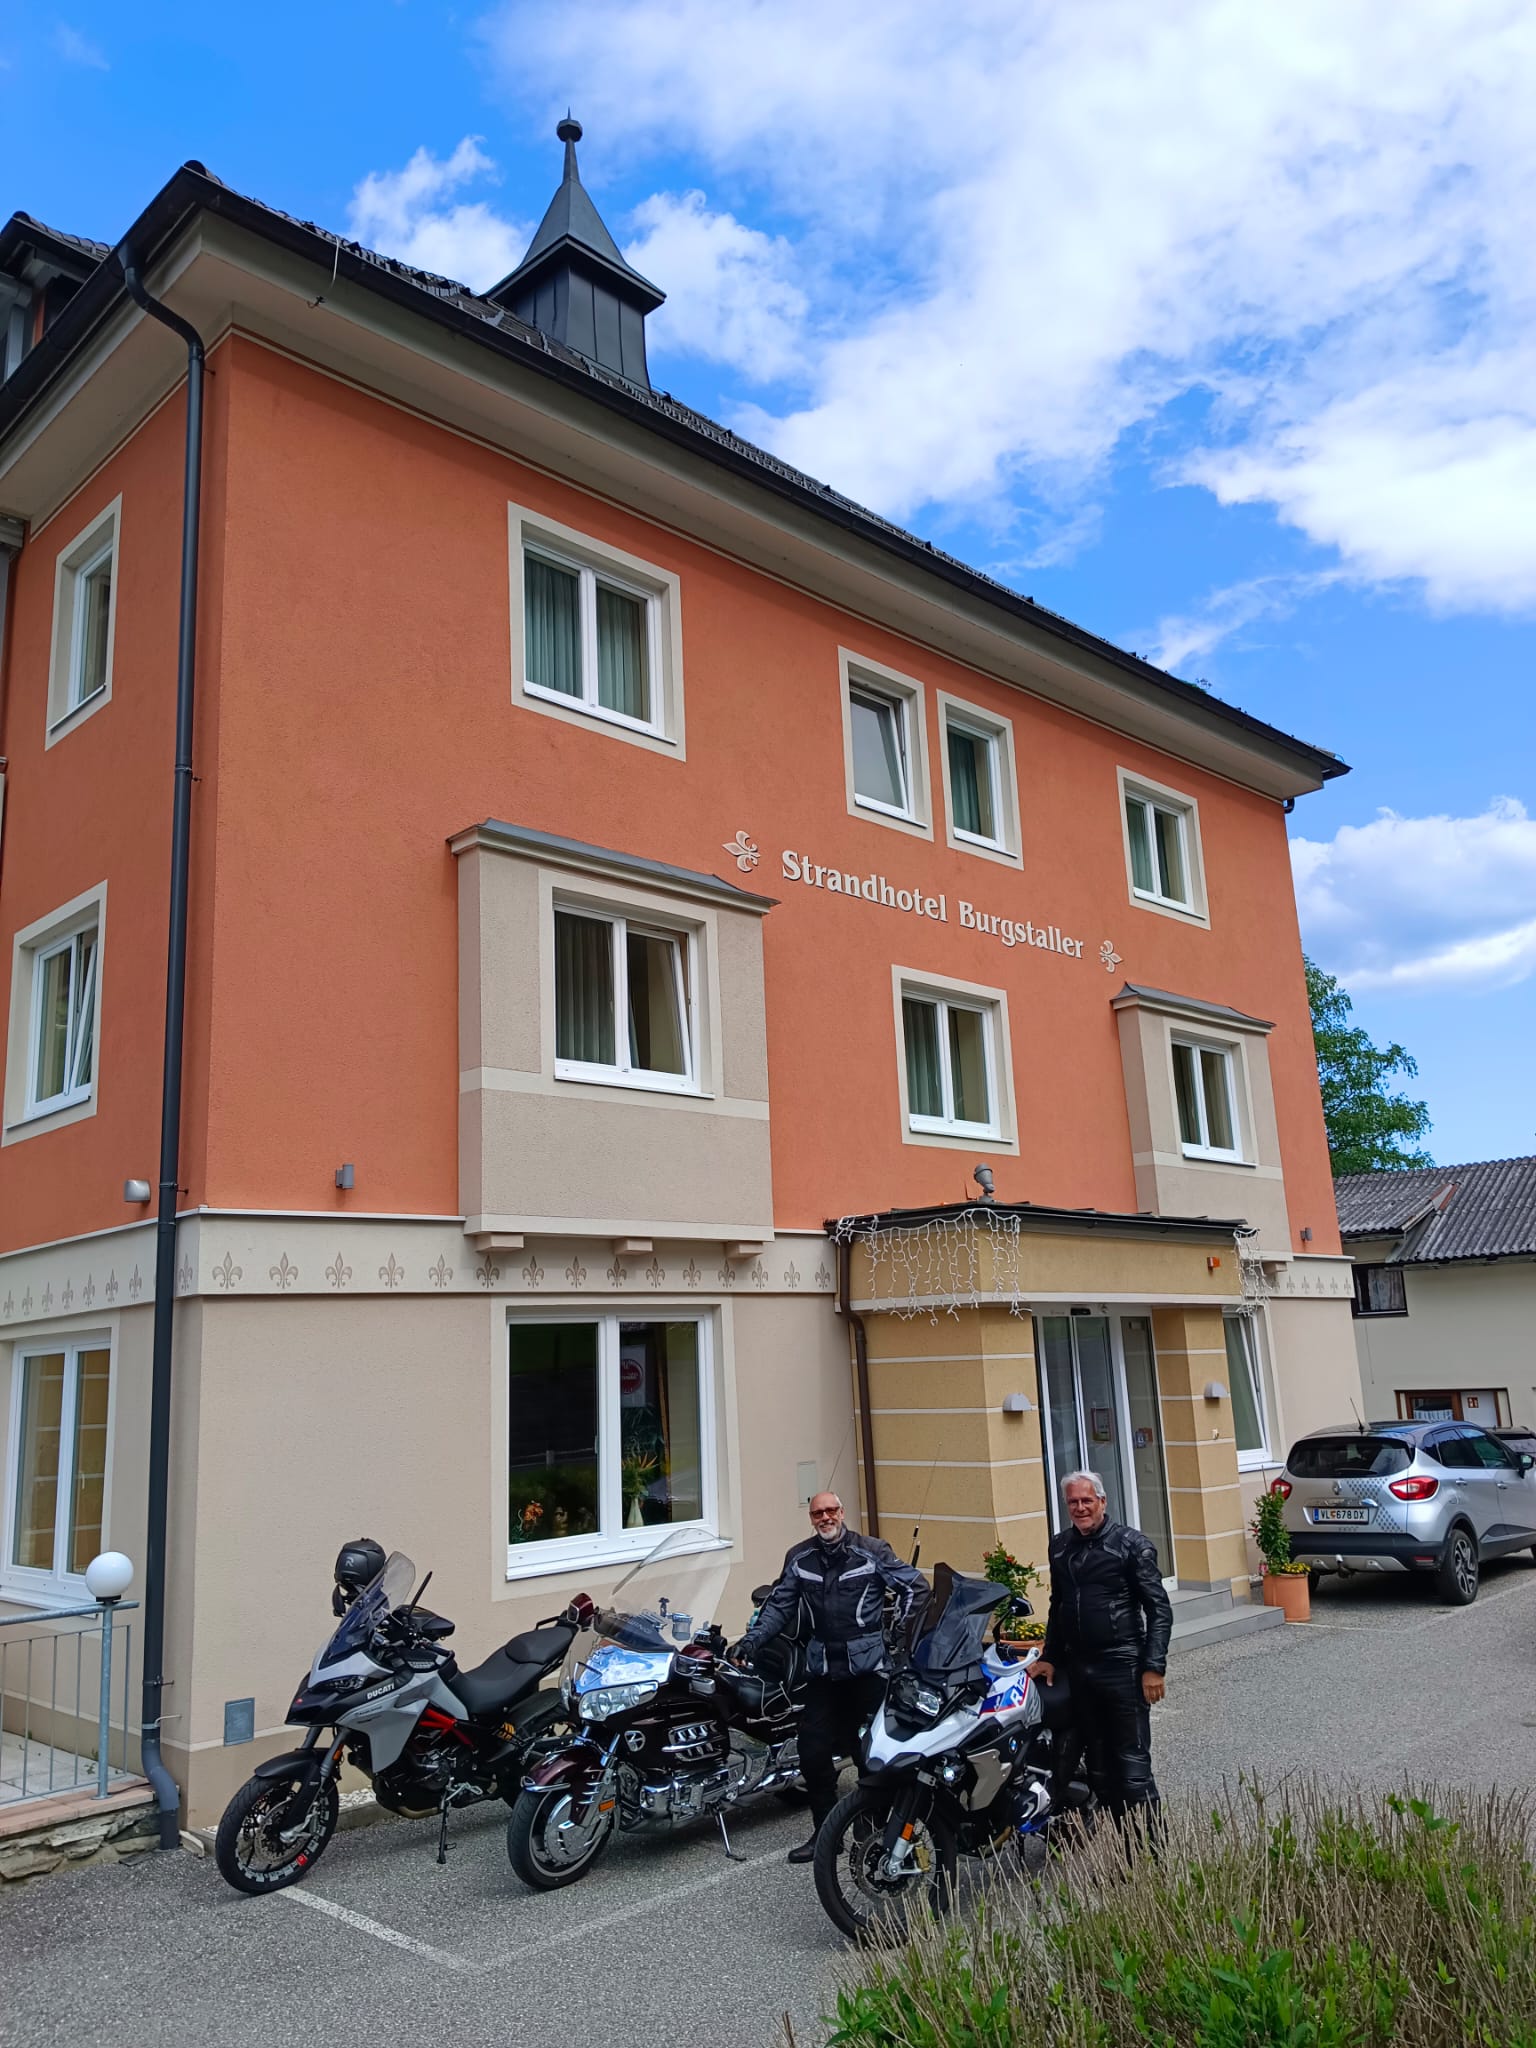 Strandhotel Burgstaller: Motorradtour durch die Kärntner Nockberge